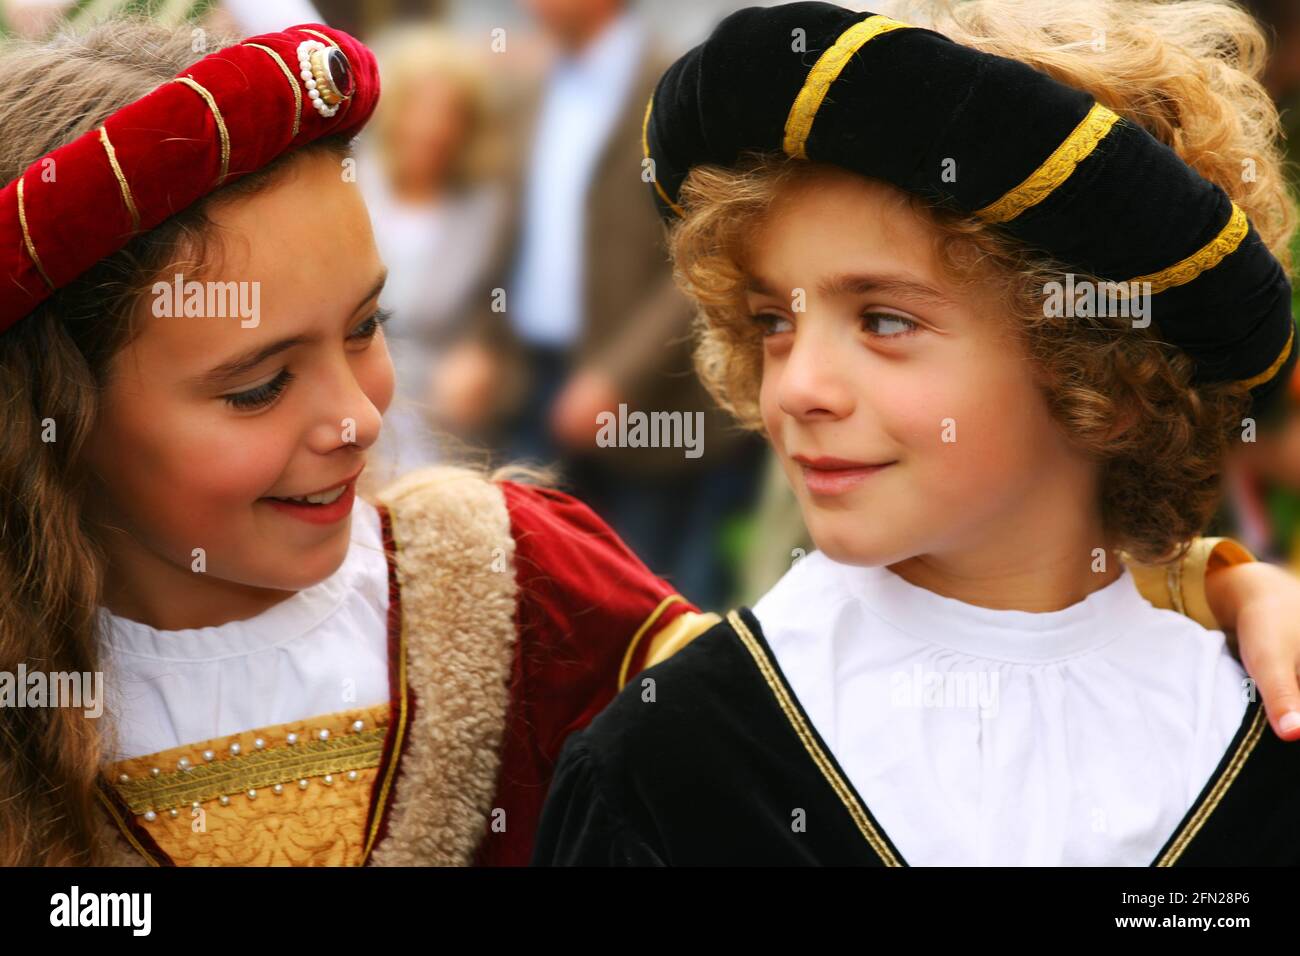 Landshuter Hochzeit beim historiischen Festzug Mädchen und Junge mit Verkleidung und Kostüm sich verliebt in die Augen Foto Stock